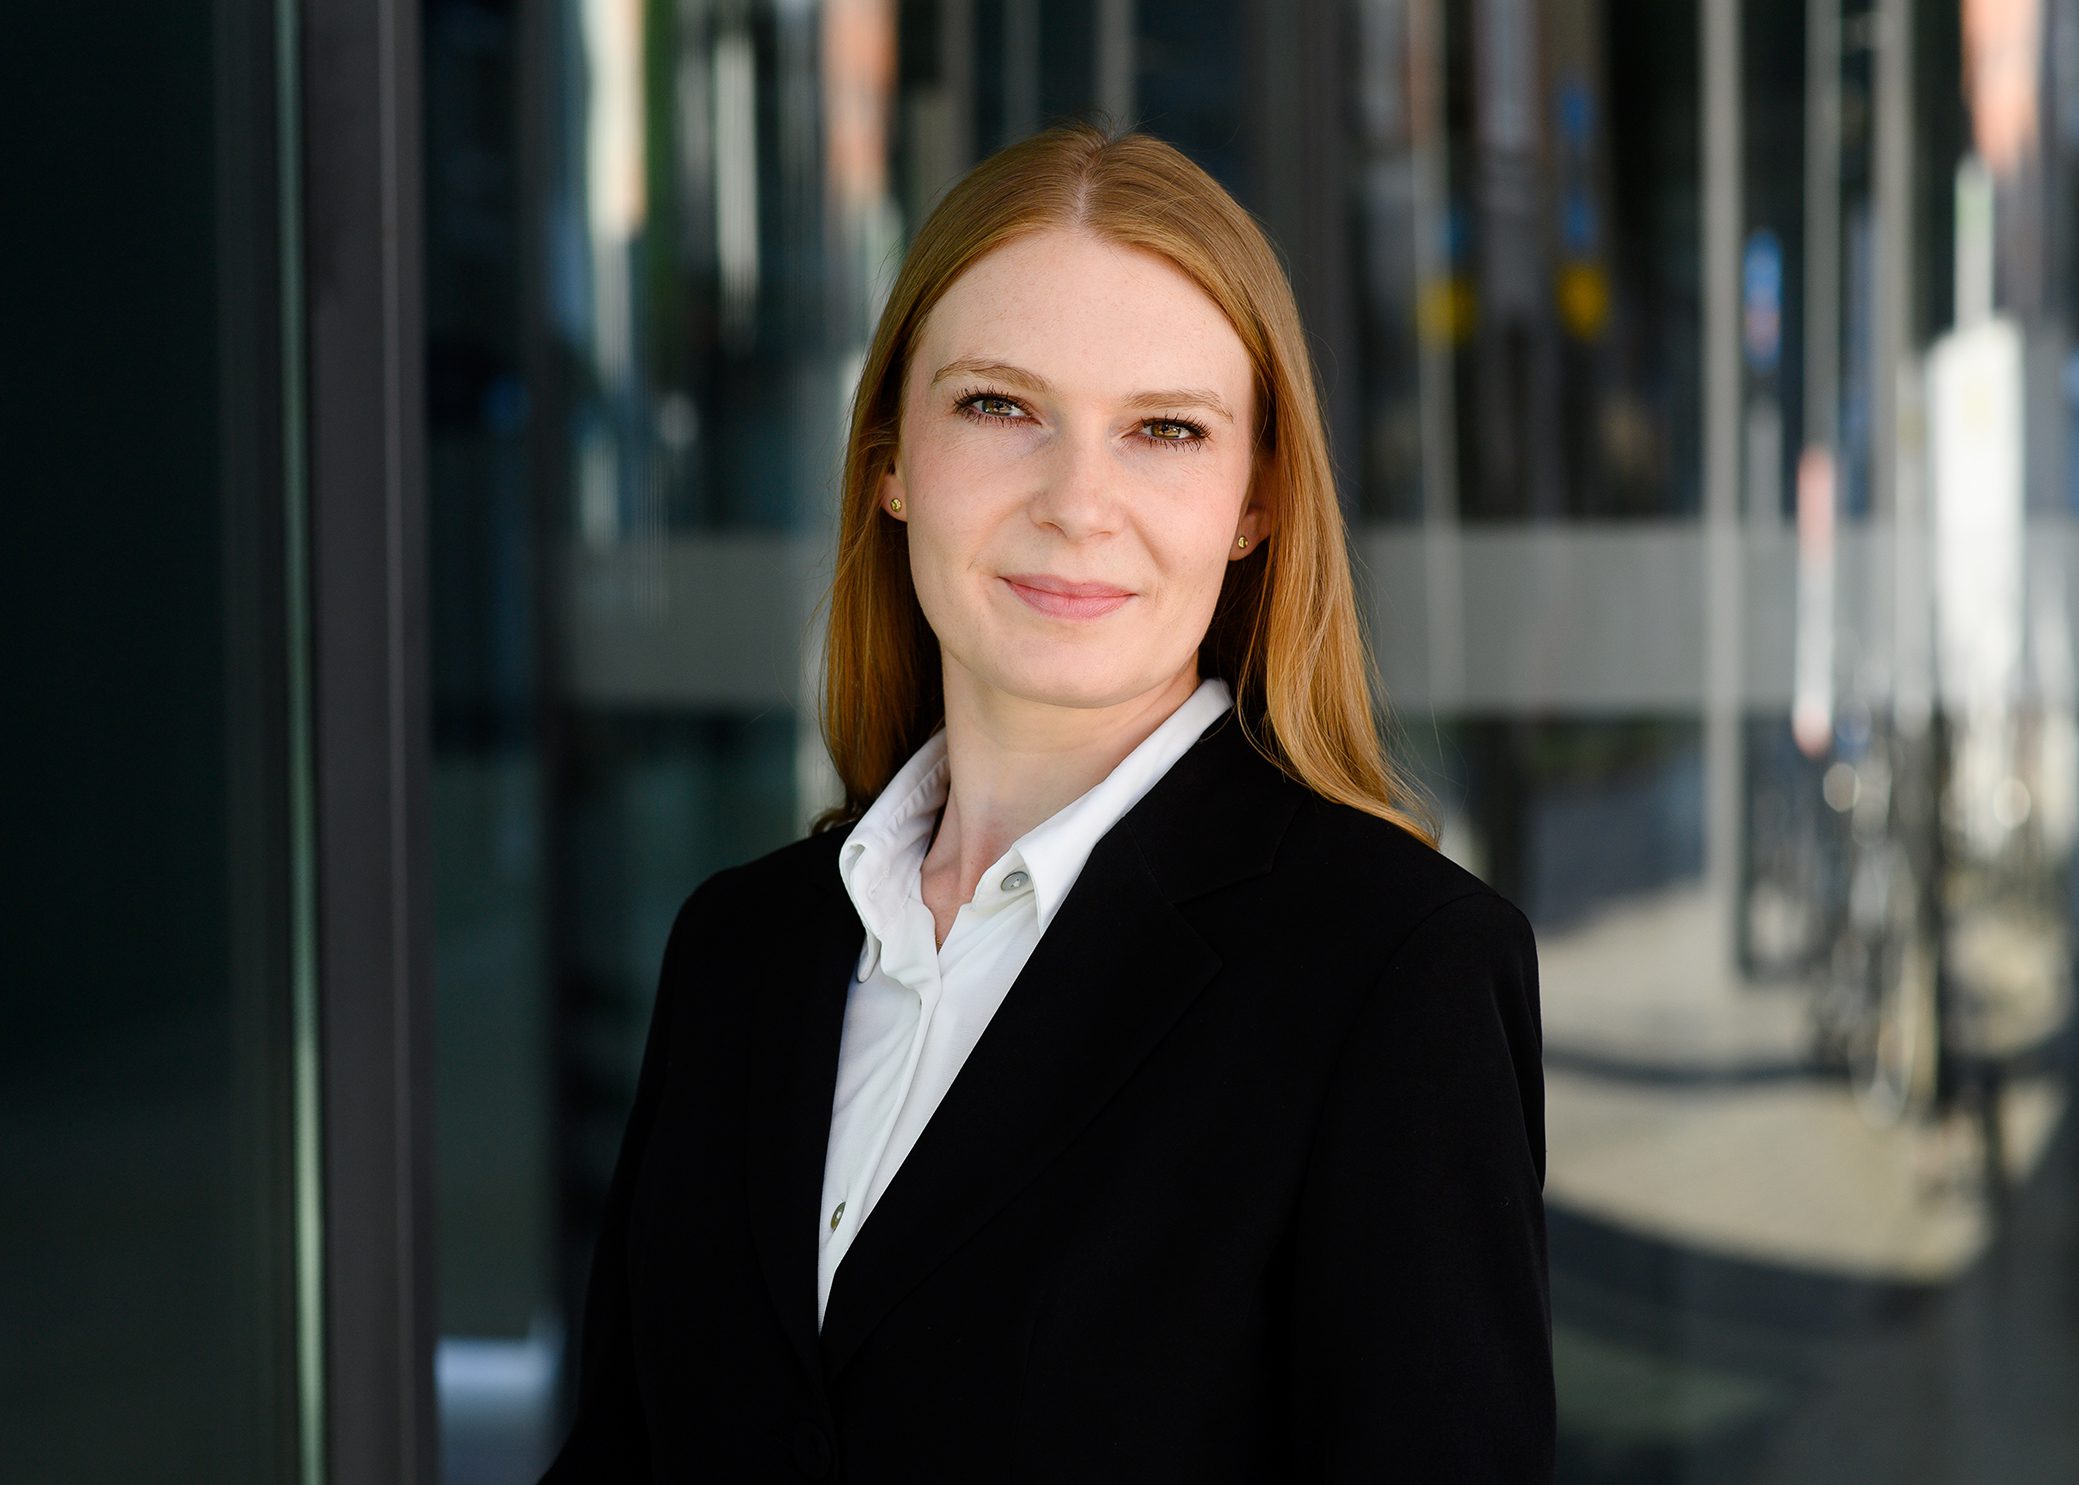 Dr. Veronika Weber is de nieuwe Director Quality Assurance Vion Duitsland